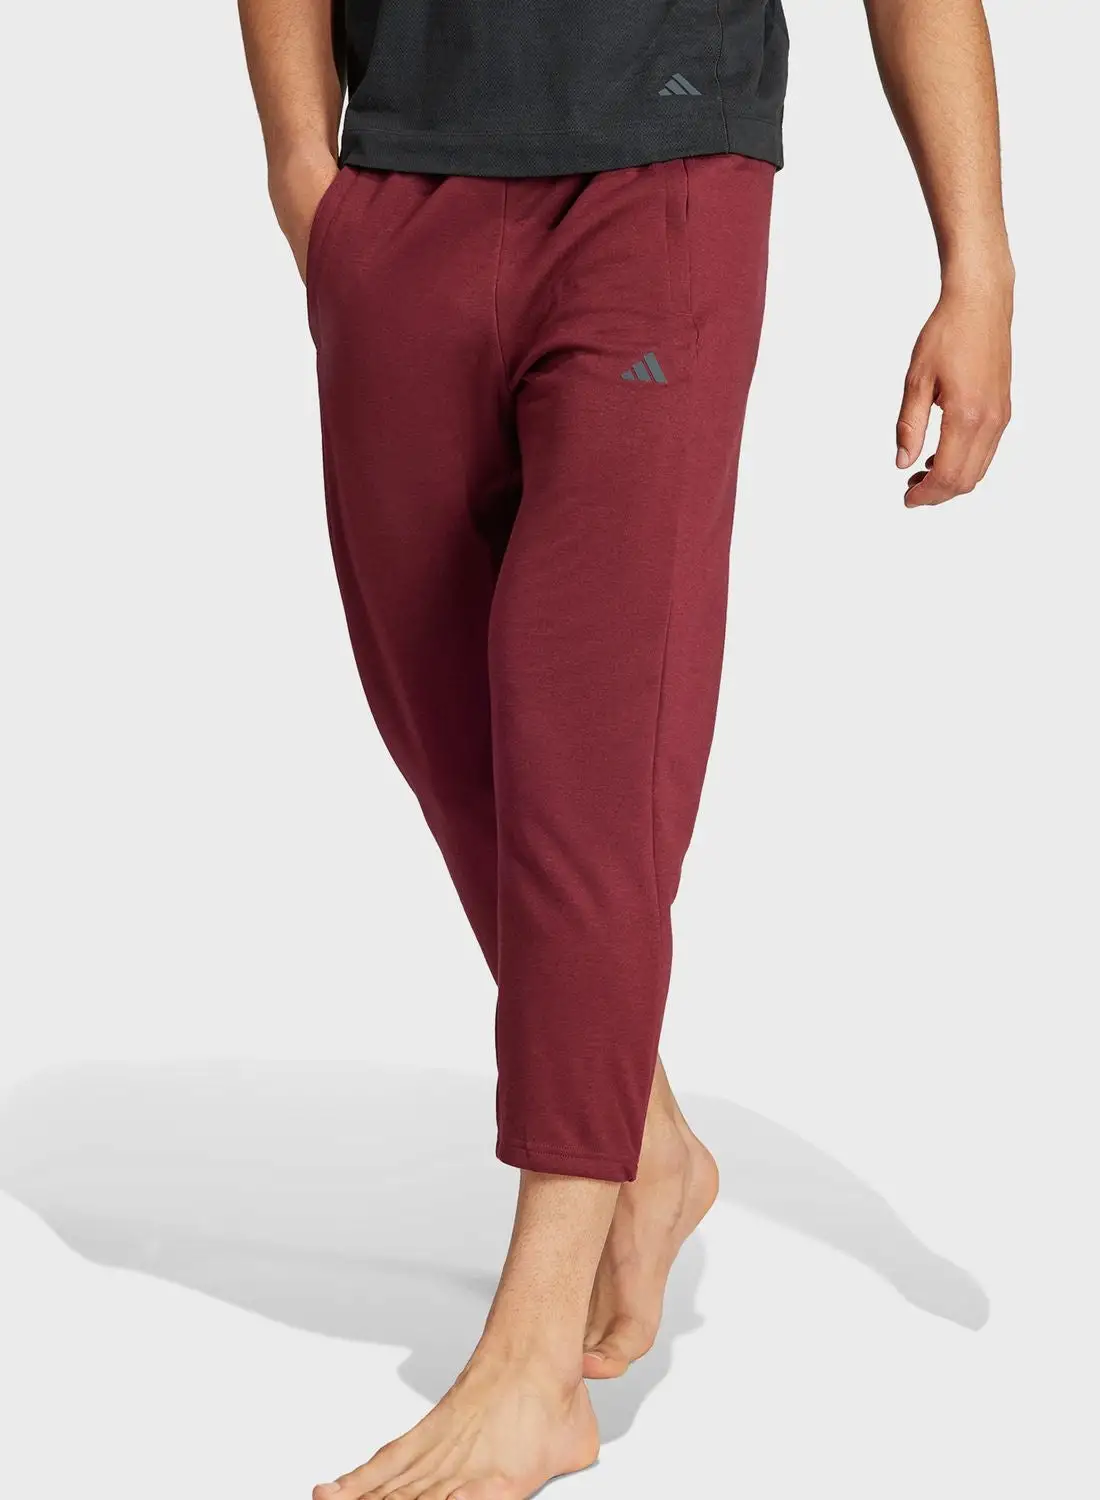 Adidas Yoga Base 78 Pants